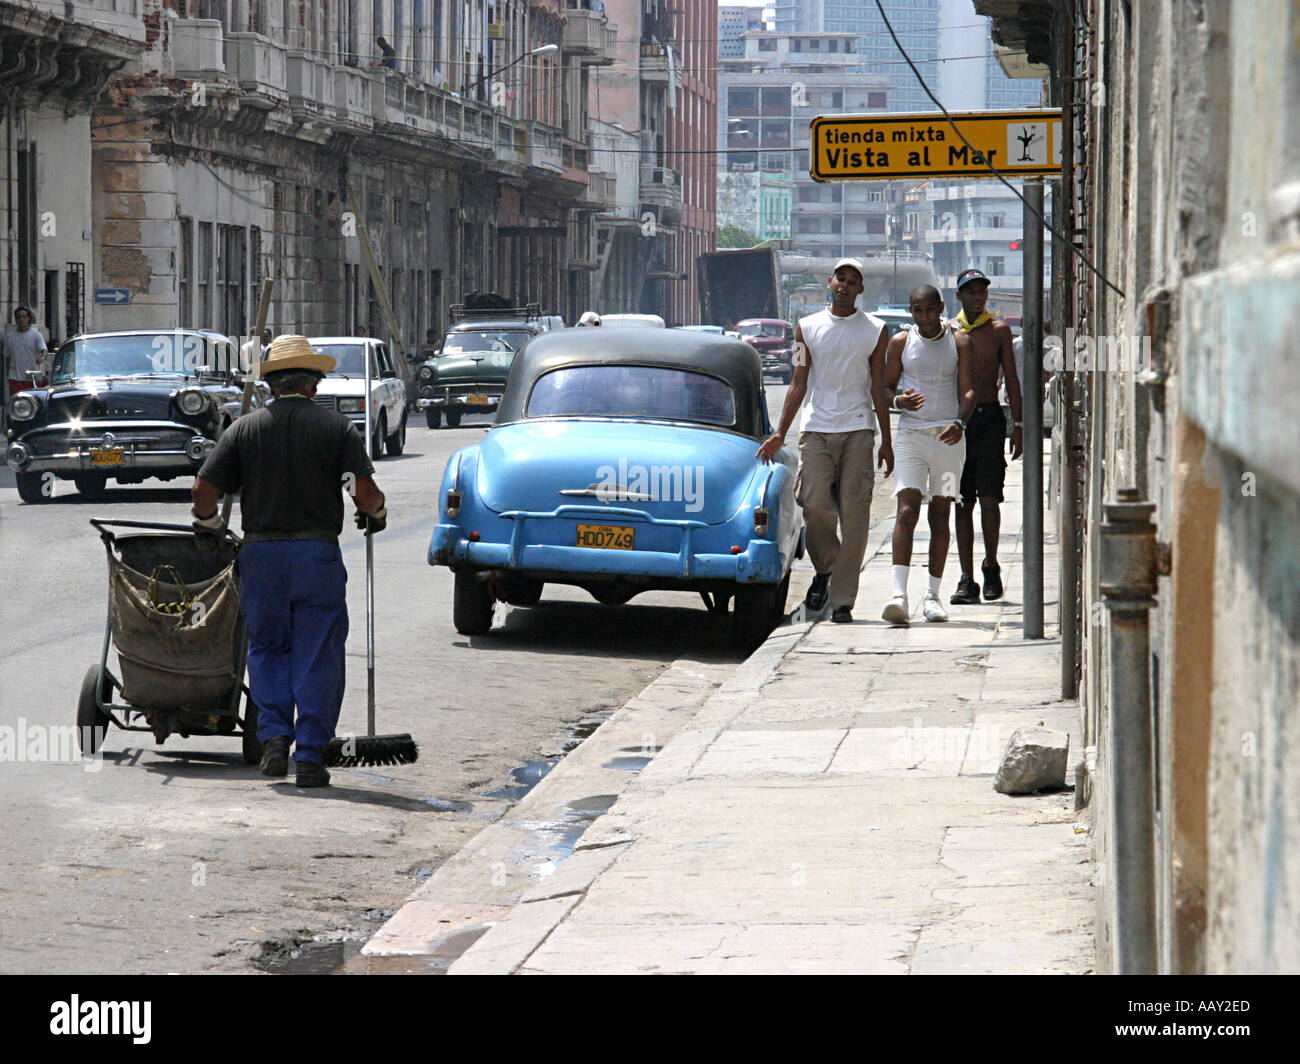 Una scena di strada nella capitale cubana Havana lontano dal centro turistico di hotspot Foto Stock